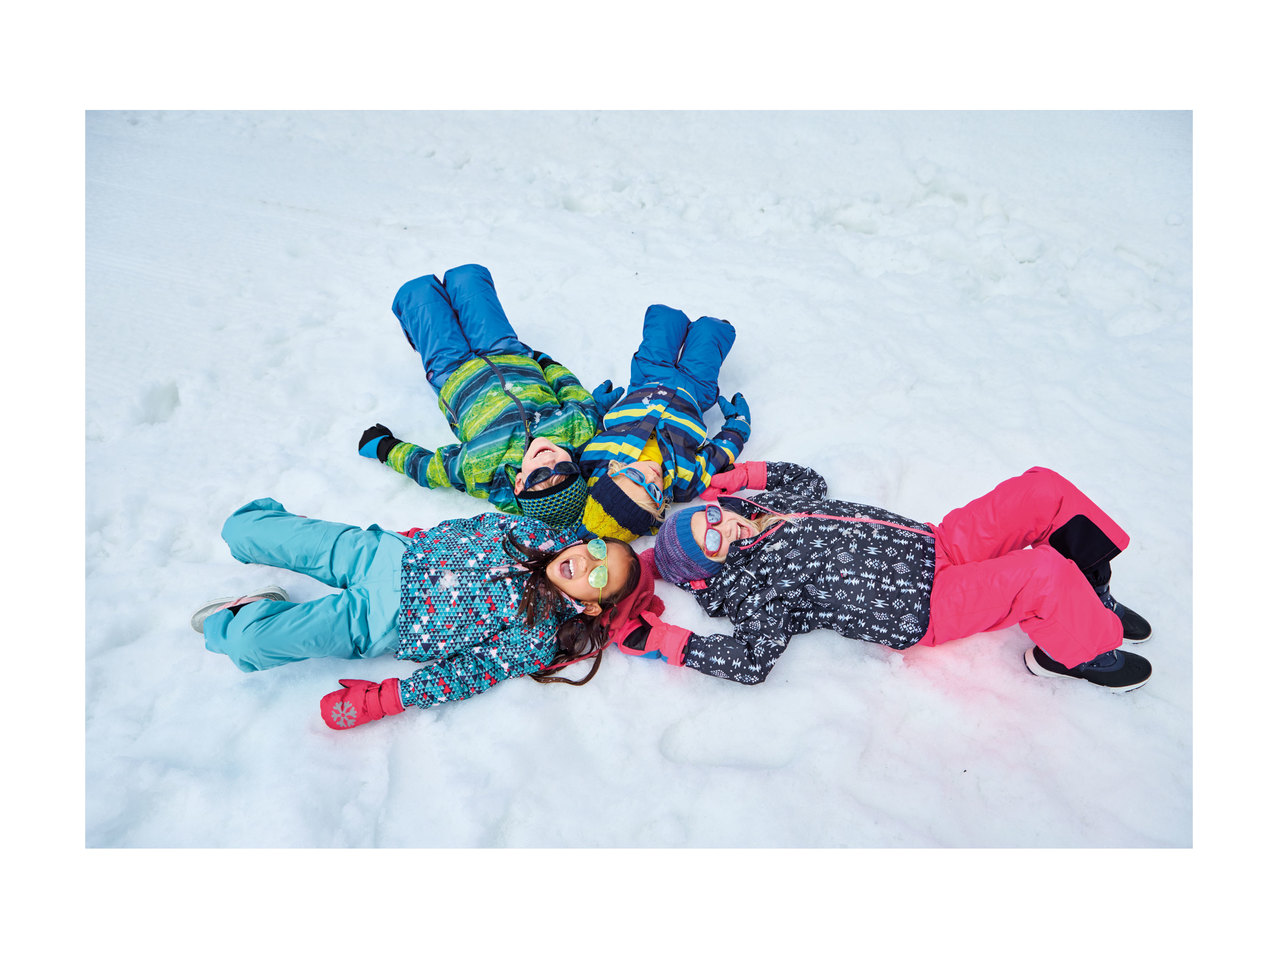 Lupilu Infant Girls' Ski Jacket1